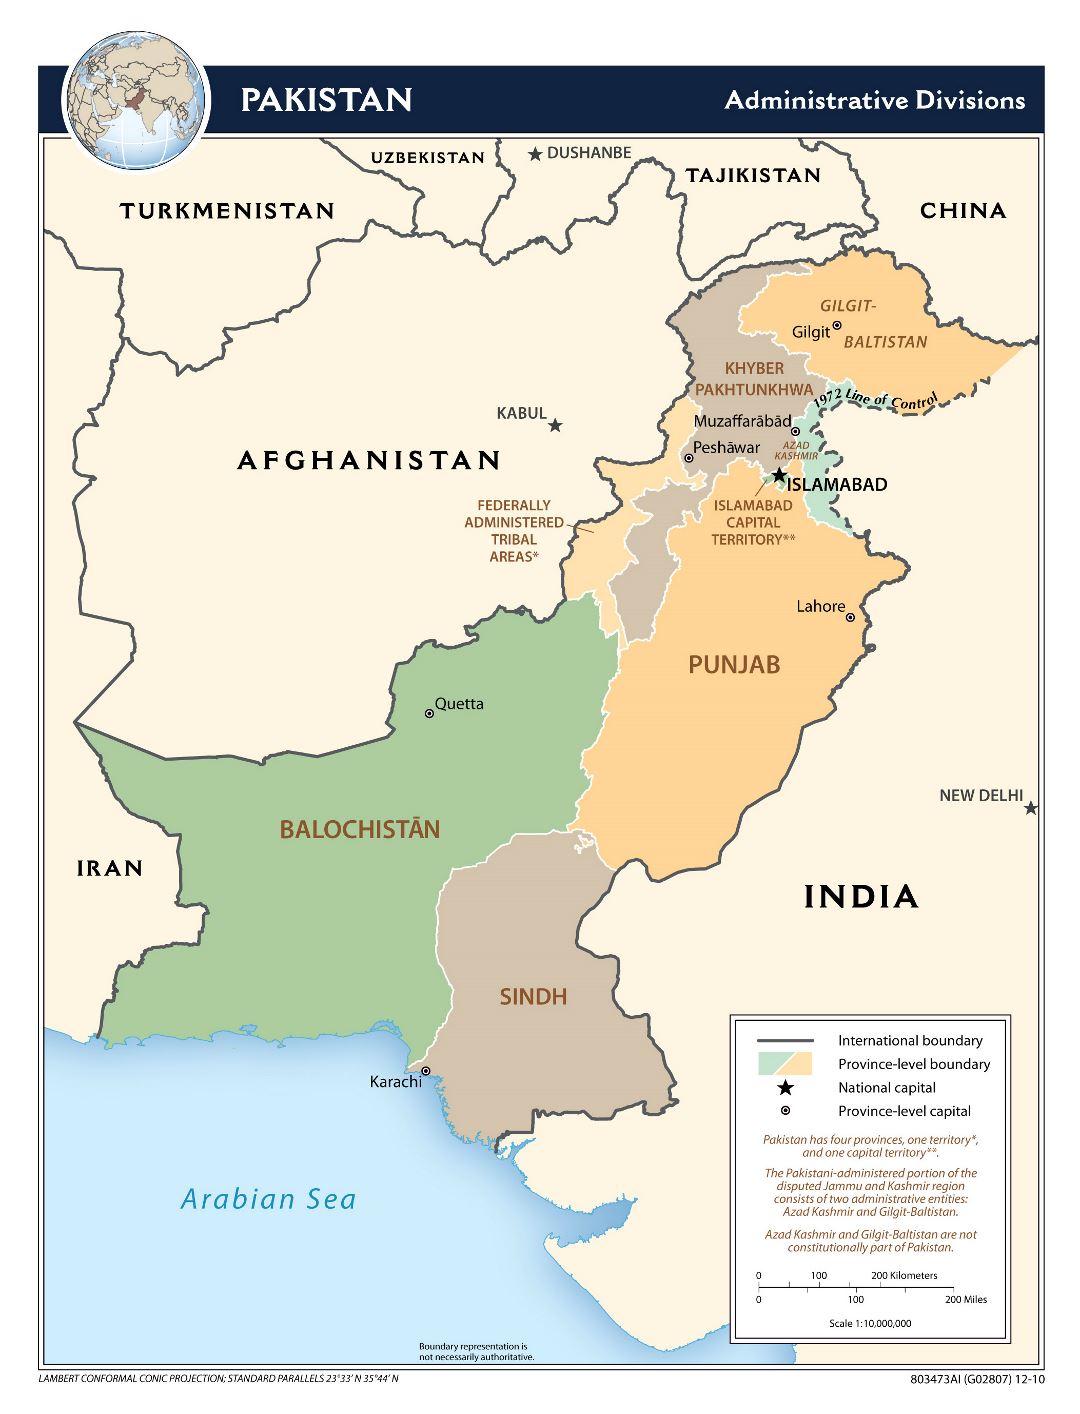 Большая карта административных делений Пакистана - 2010